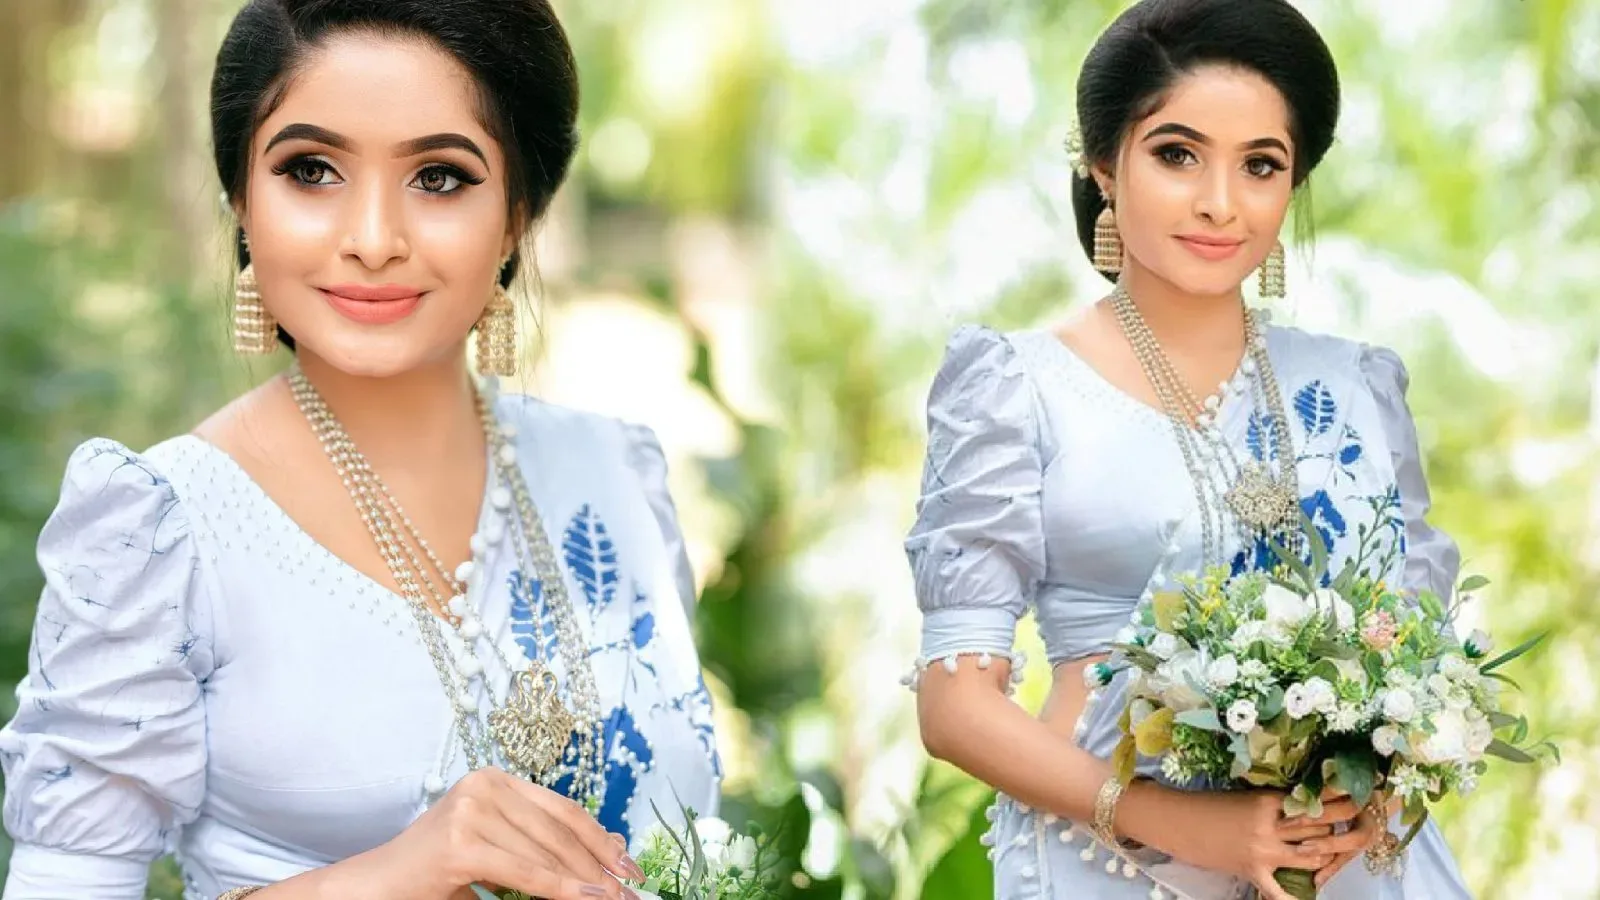 Gorgeously Looking model Dulakshi Rathnayaka in floral wedding saree